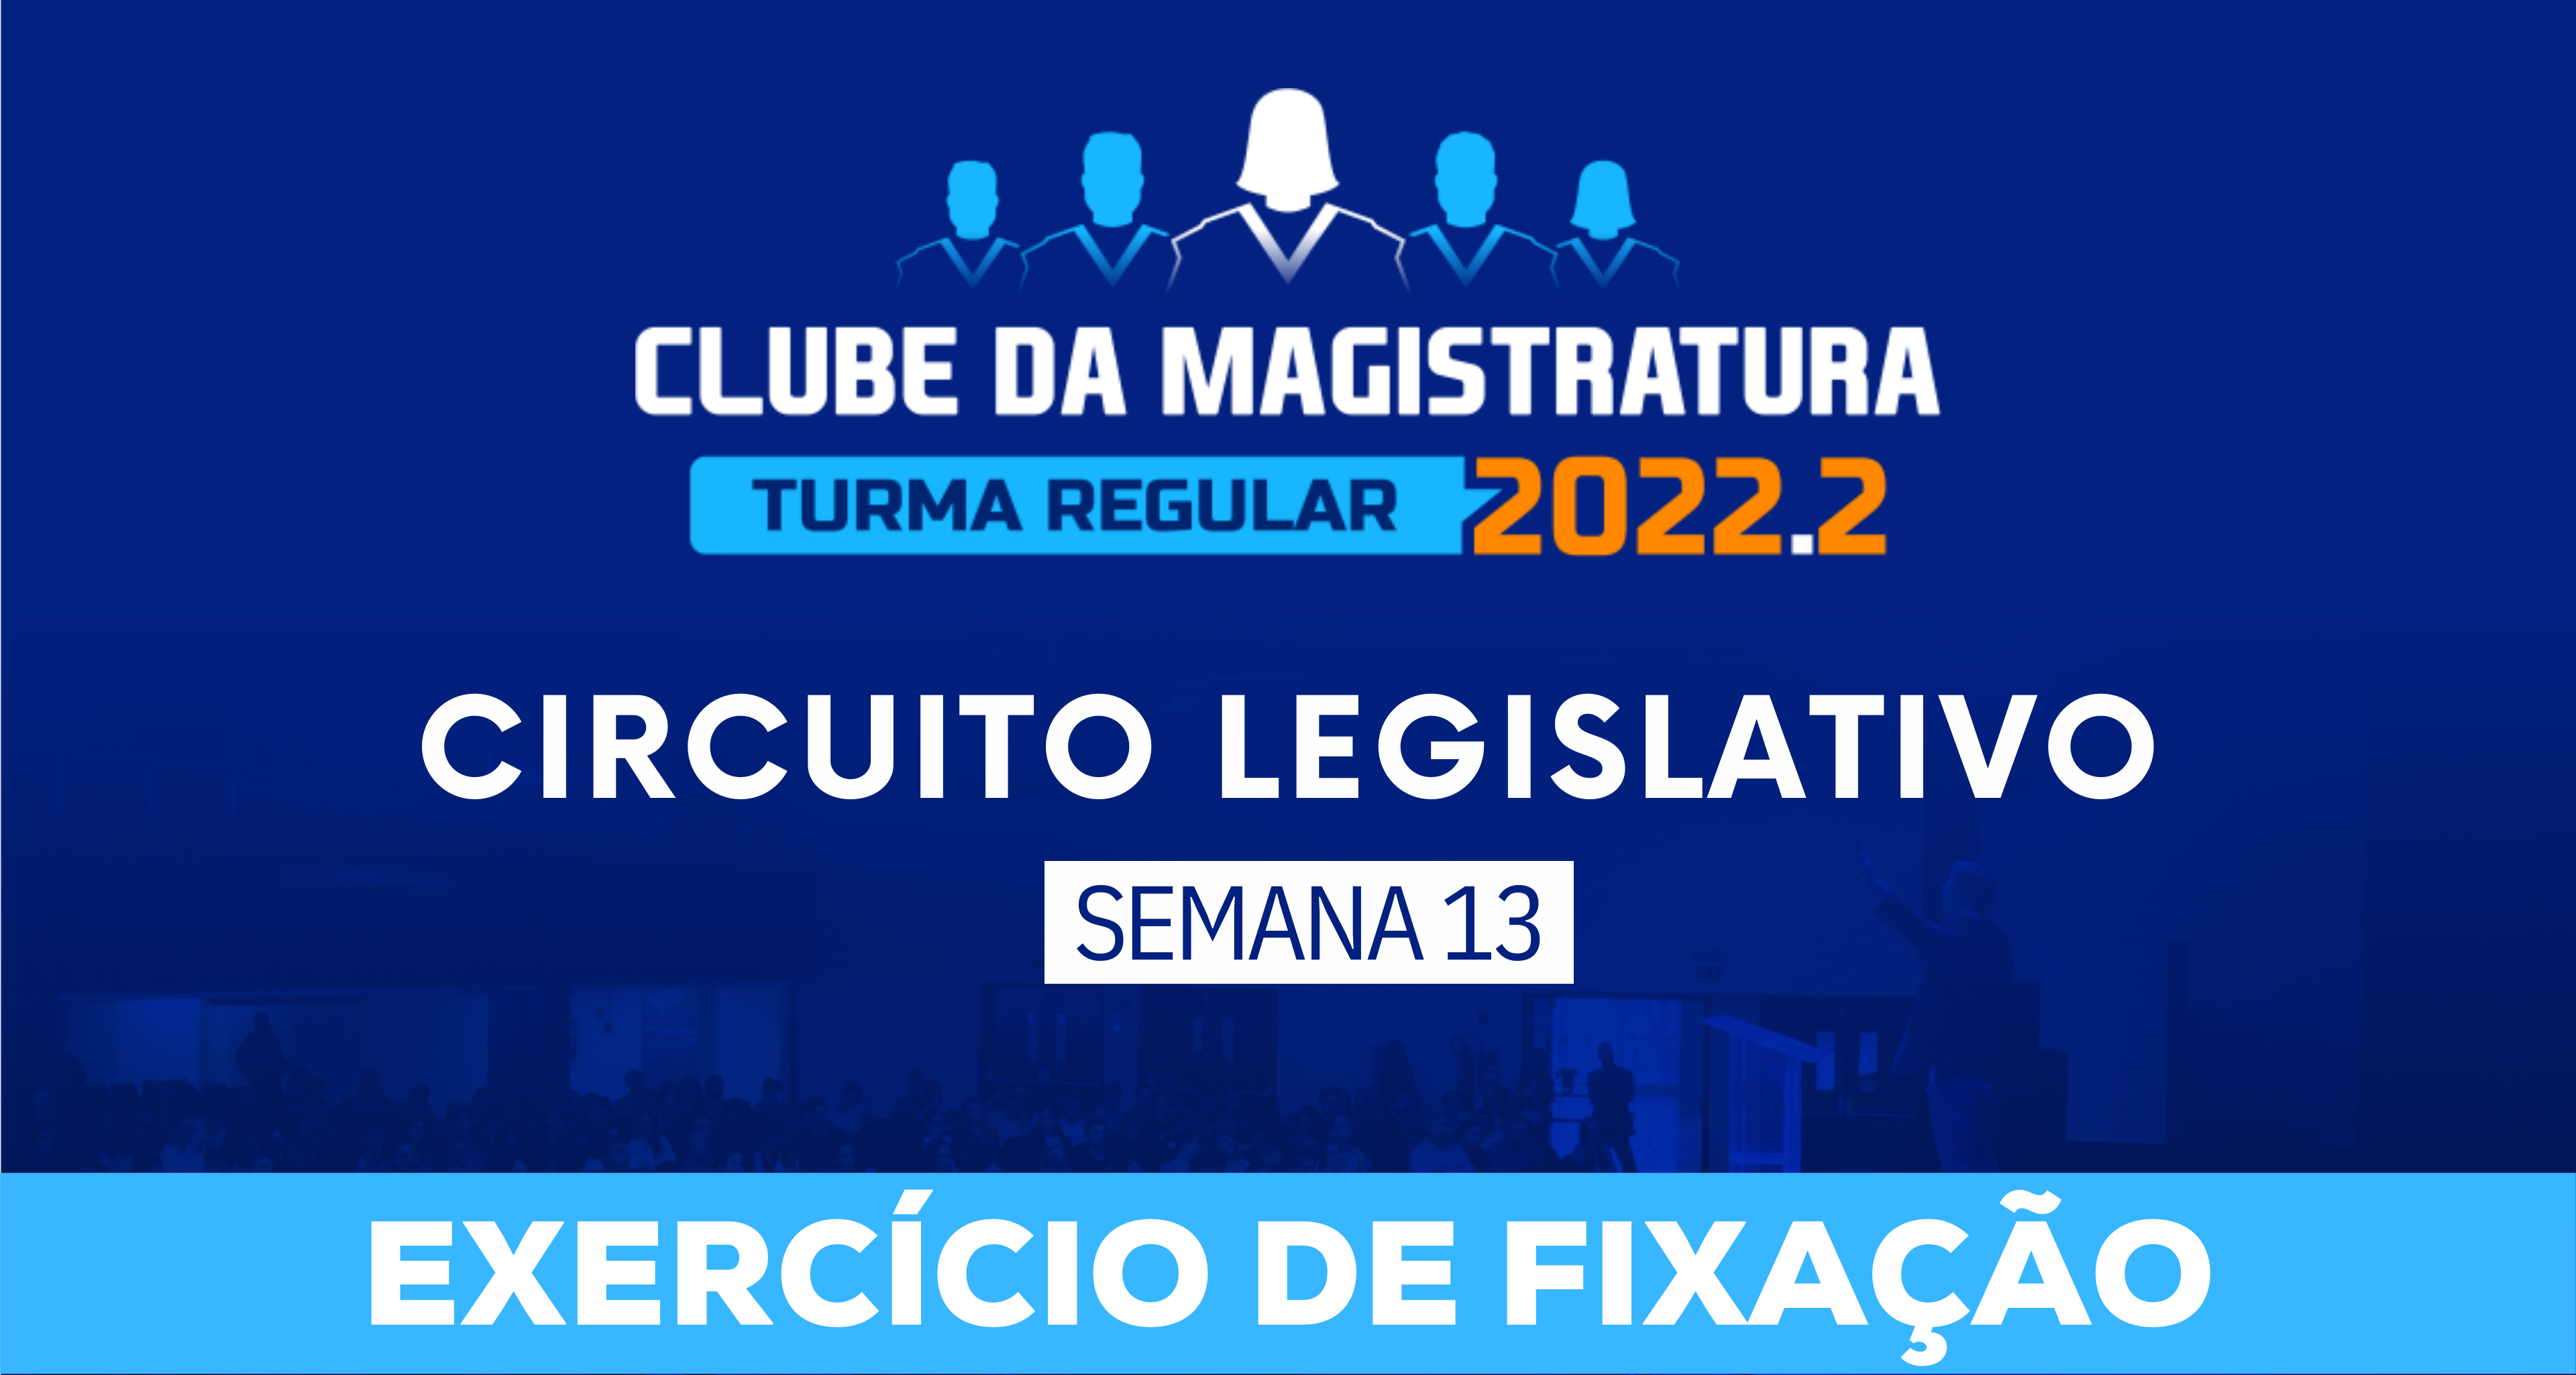 Circuito Legislativo 2022.2 (Clube da Magistratura - Semana 13)